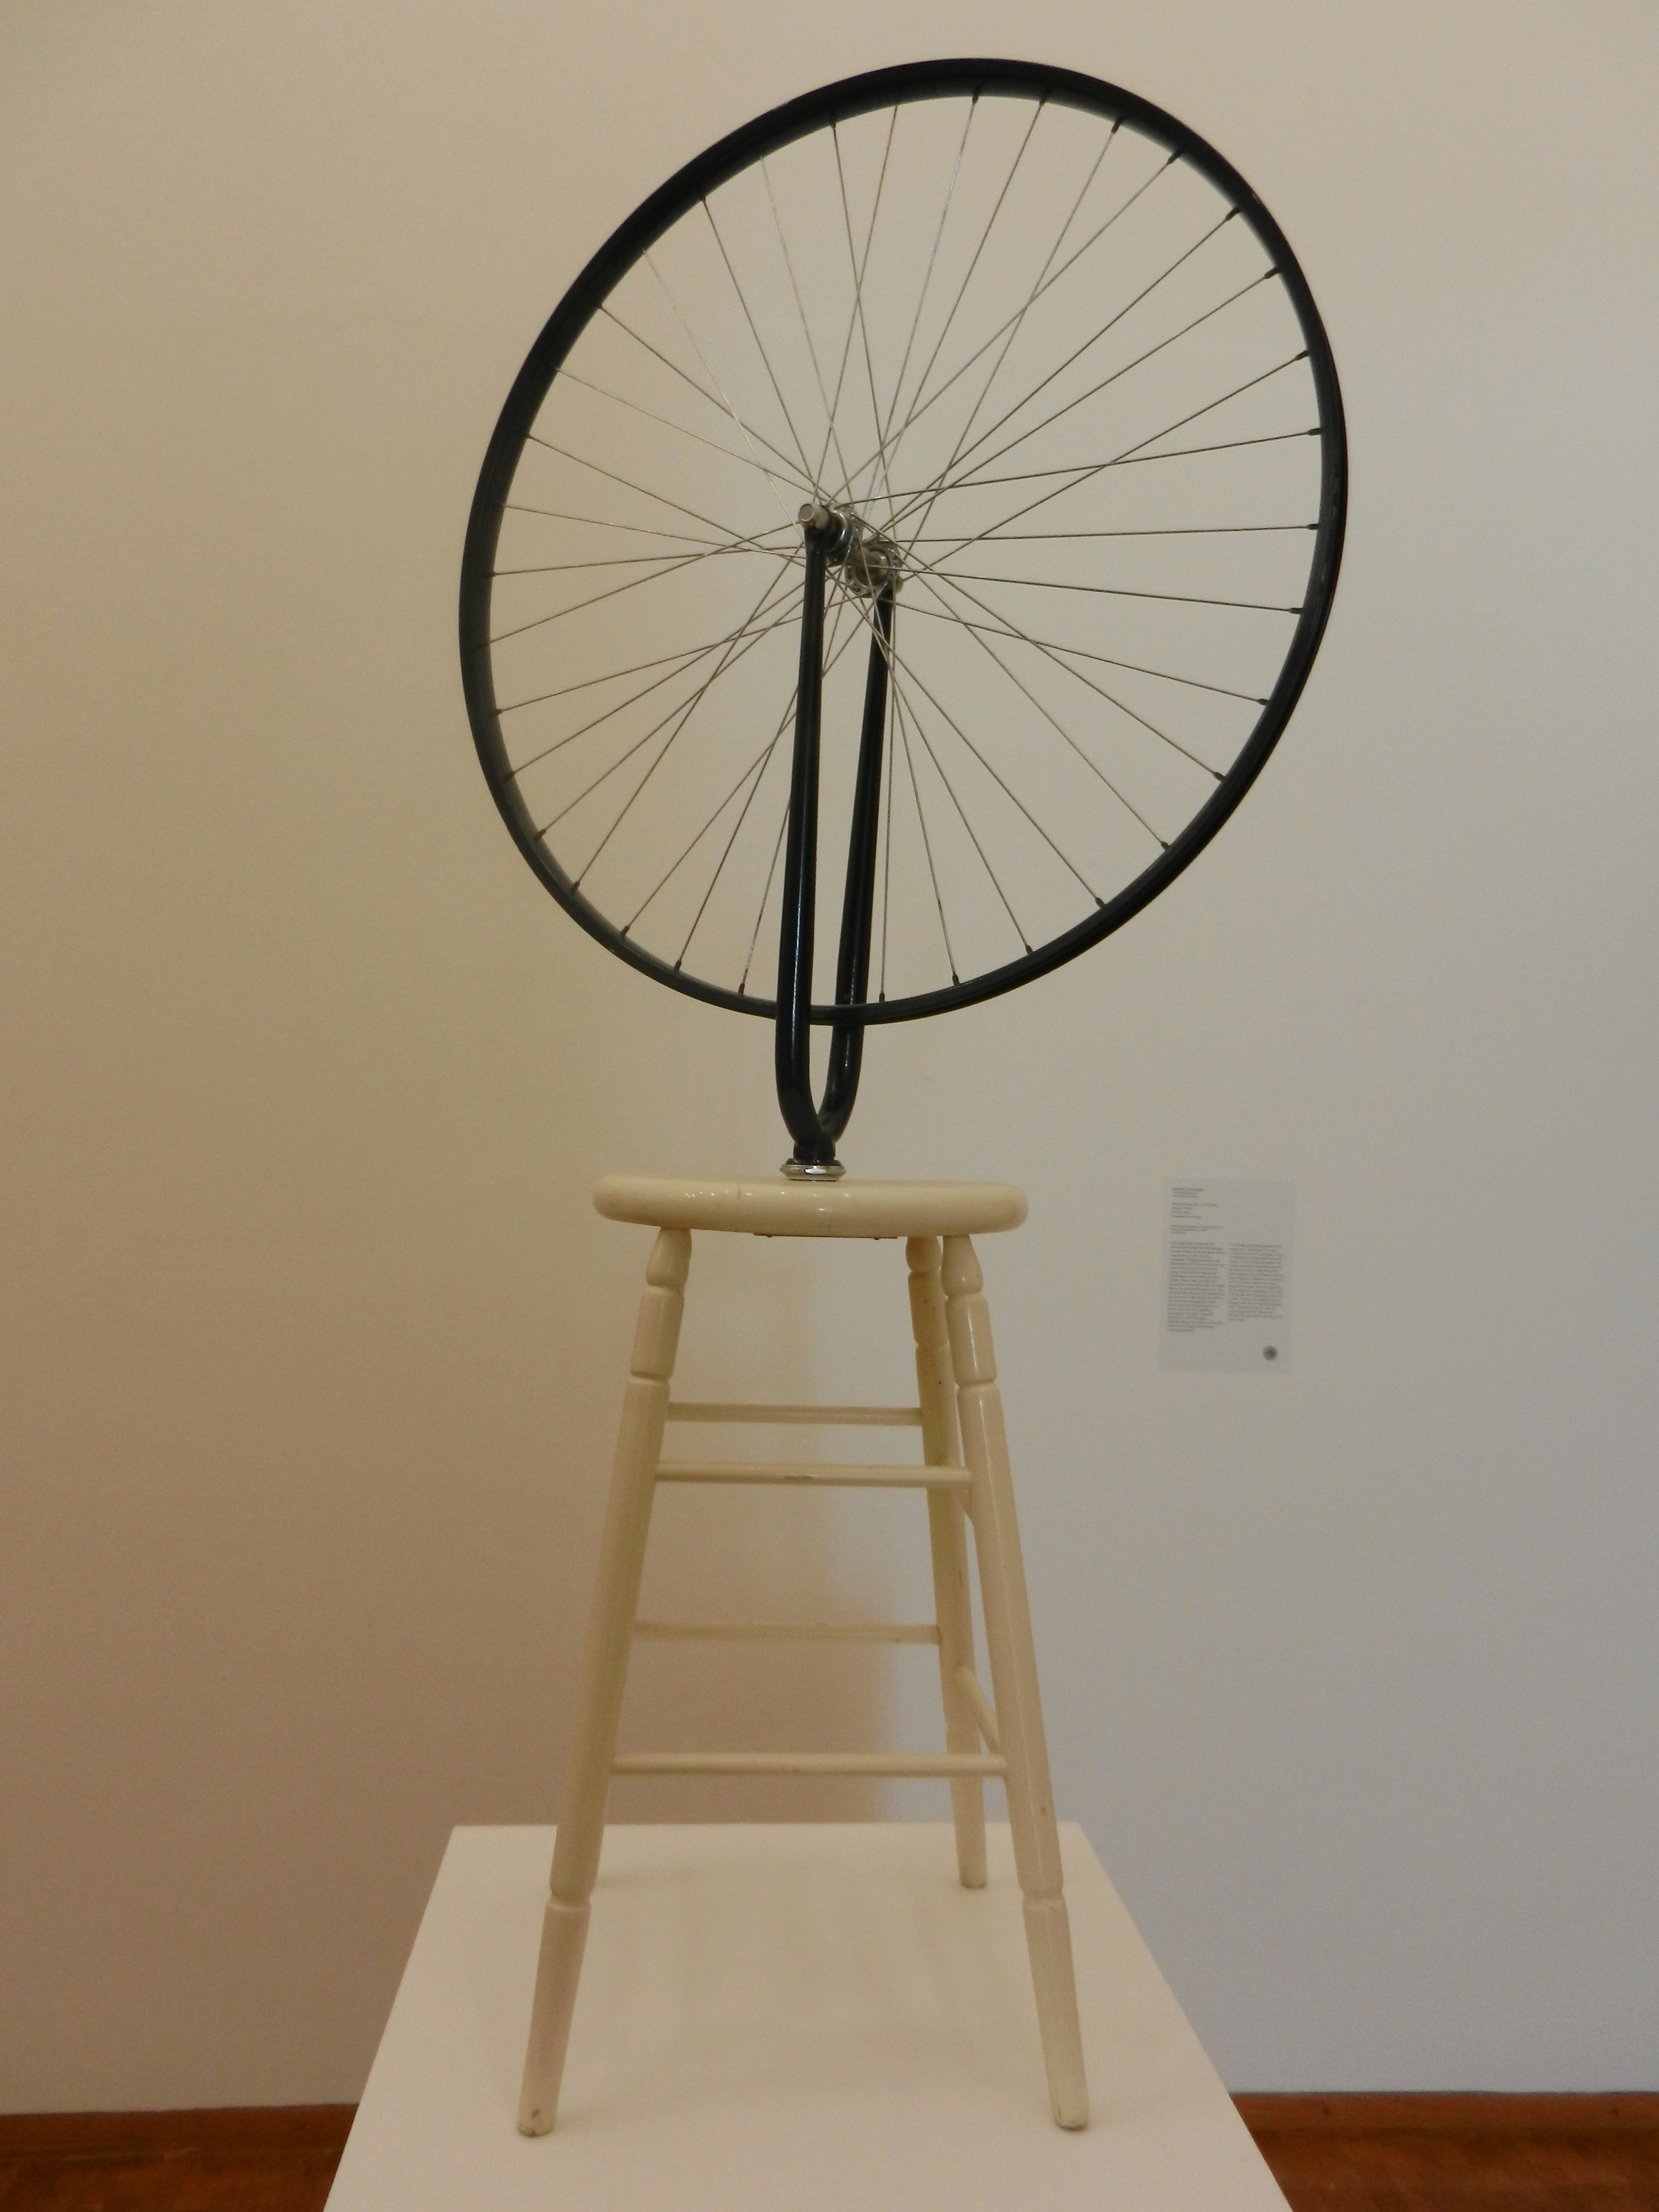 Marcel Duchamp: Fahrrad-Rad